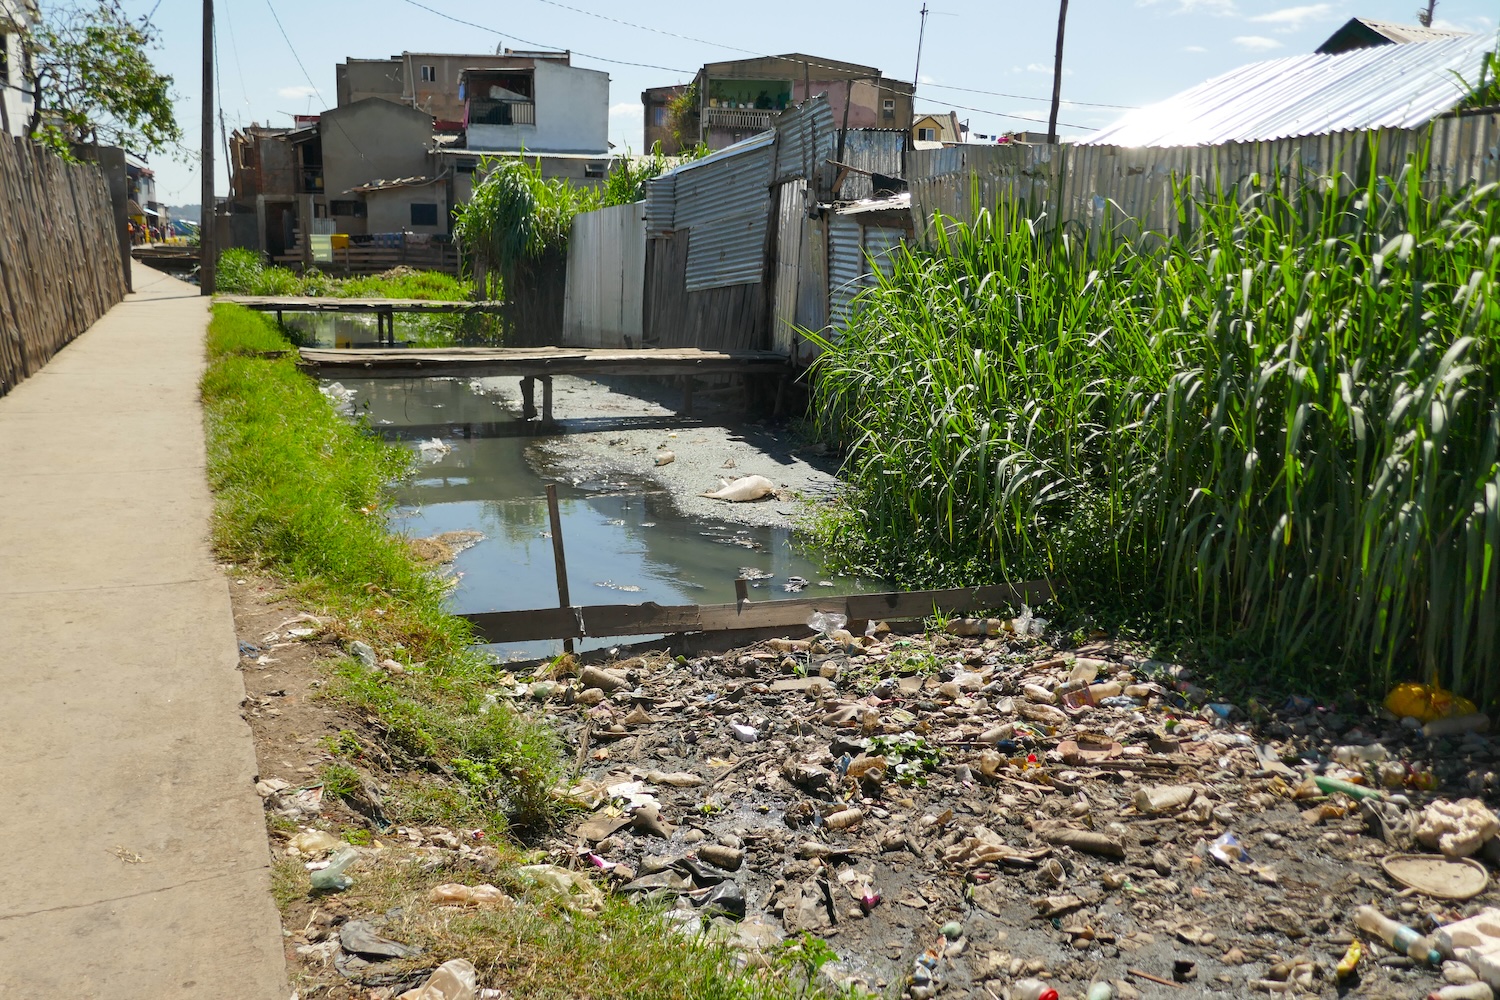 Dans les rues d’Antananarivo, les ordures se retrouvent dans les caniveaux. Touv affirme qu’il faut sensibiliser la population pour que ces habitudes évoluent © Globe Reporters